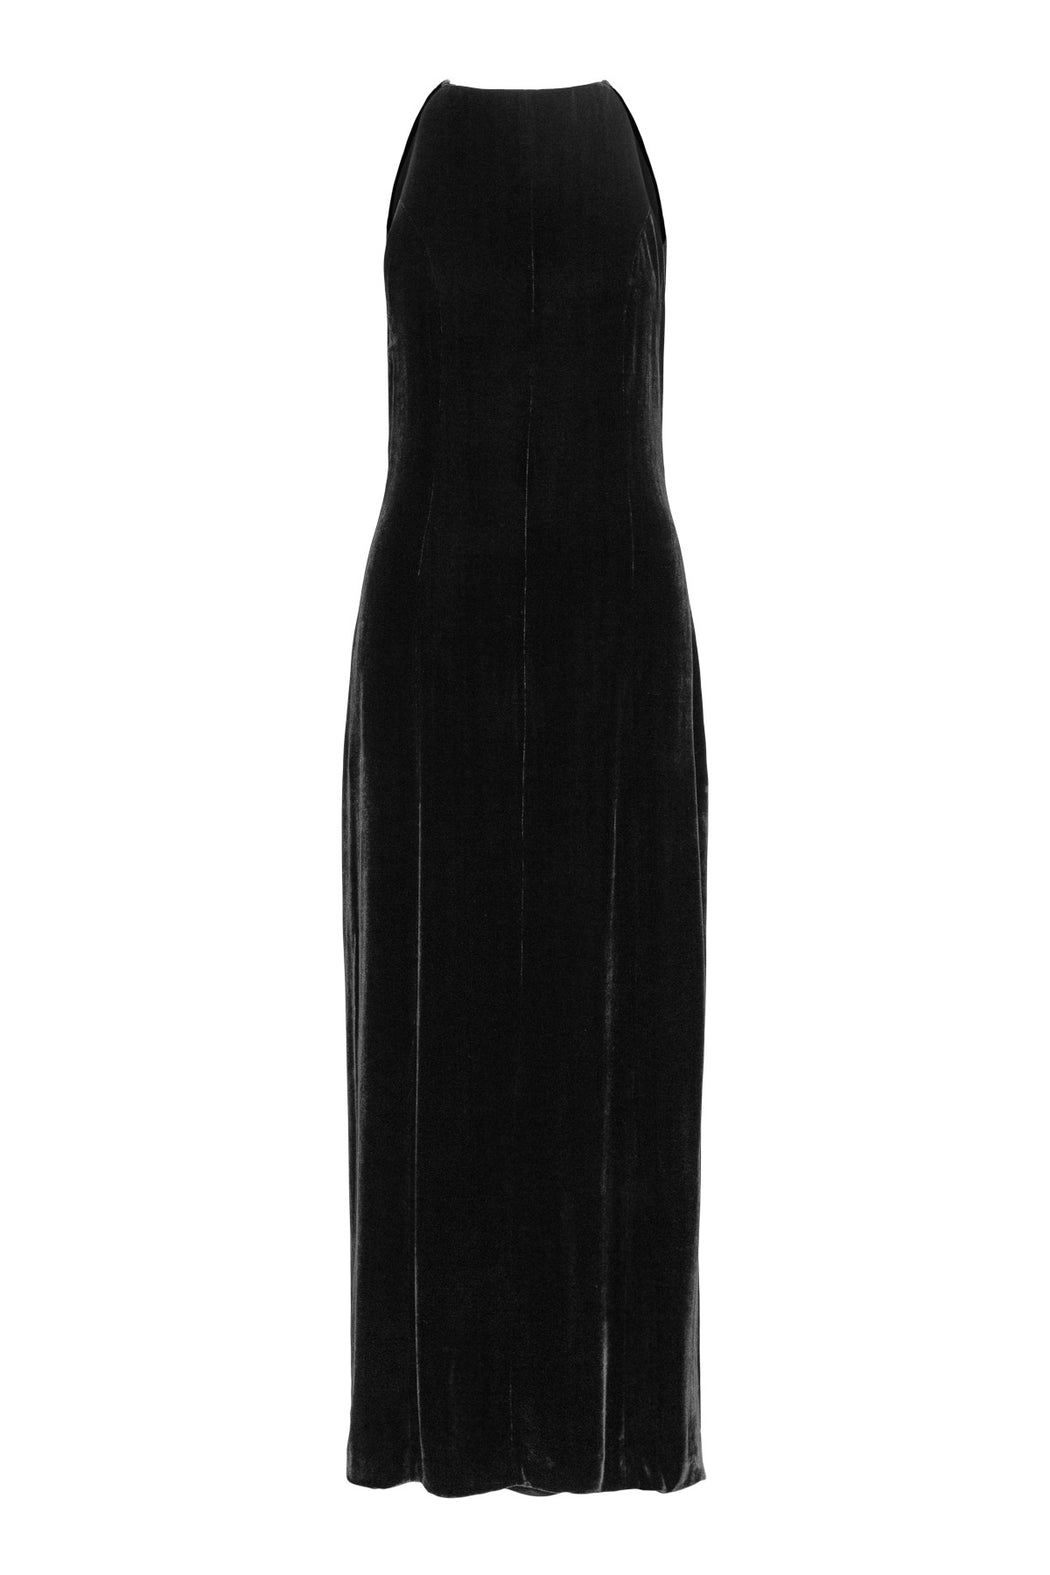 Envelope1976 Eve dress, Black Dress Black